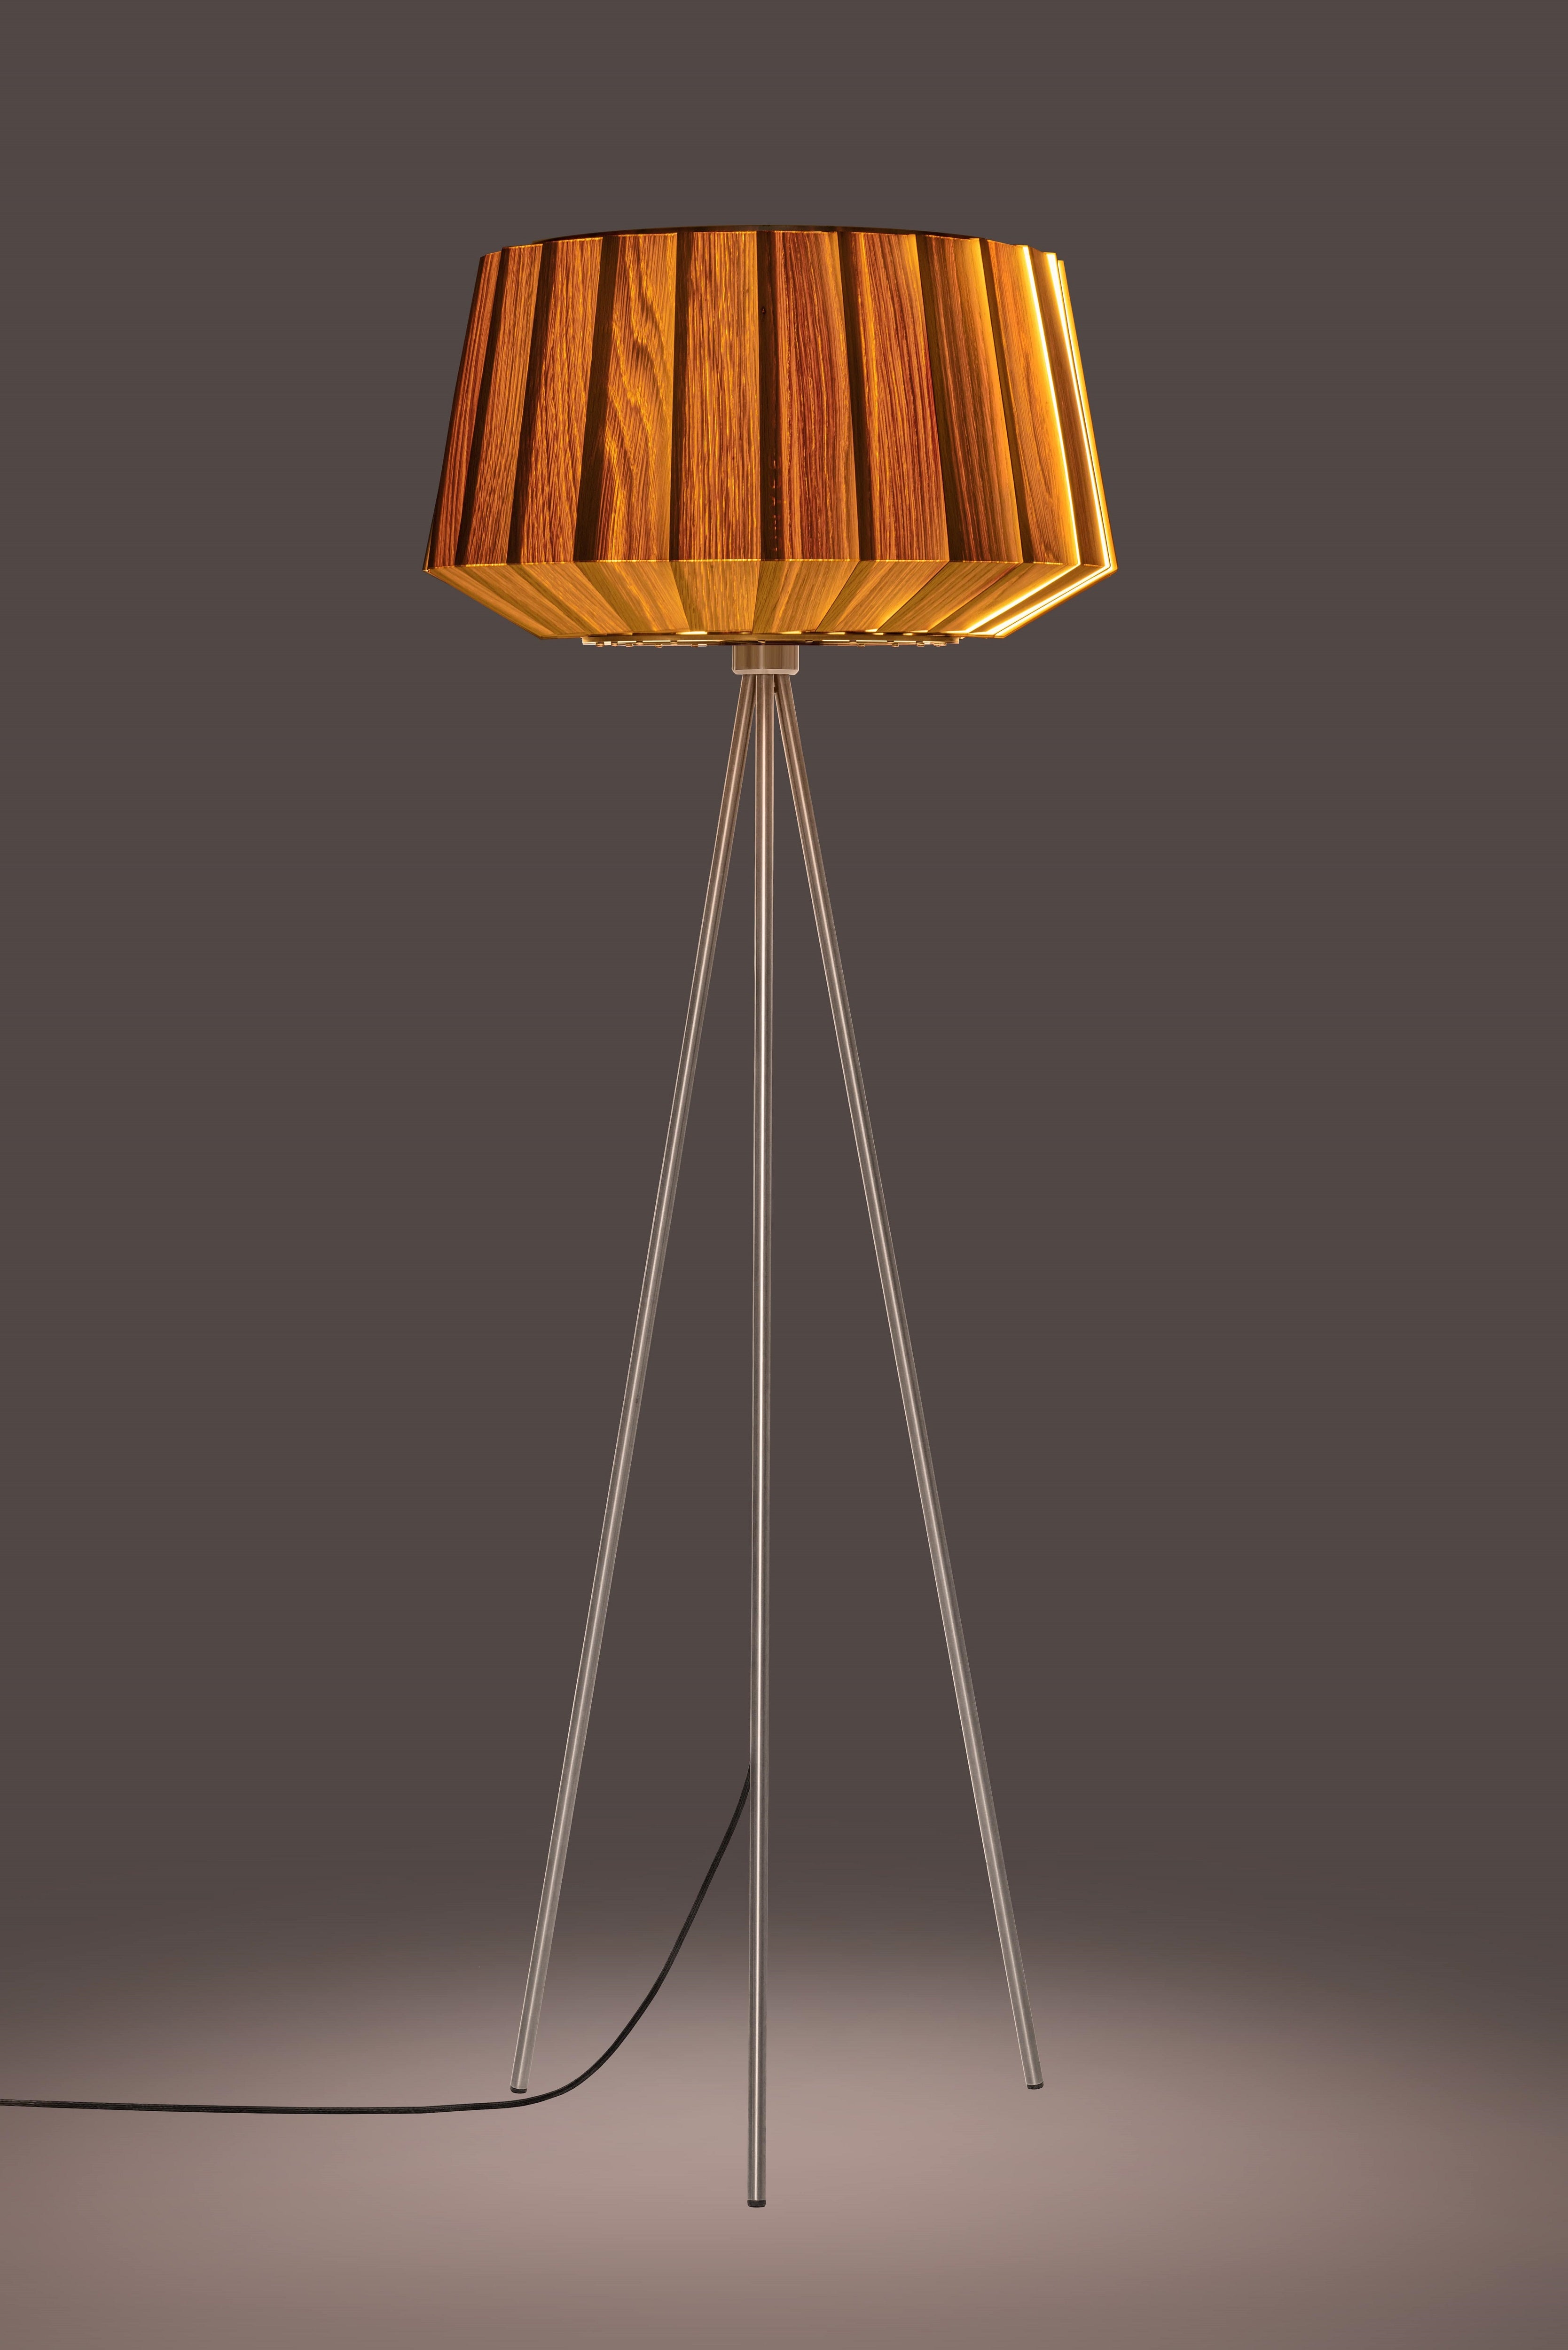 Beleuchtete moderne filigrane Holz Stehlampe in Eiche 